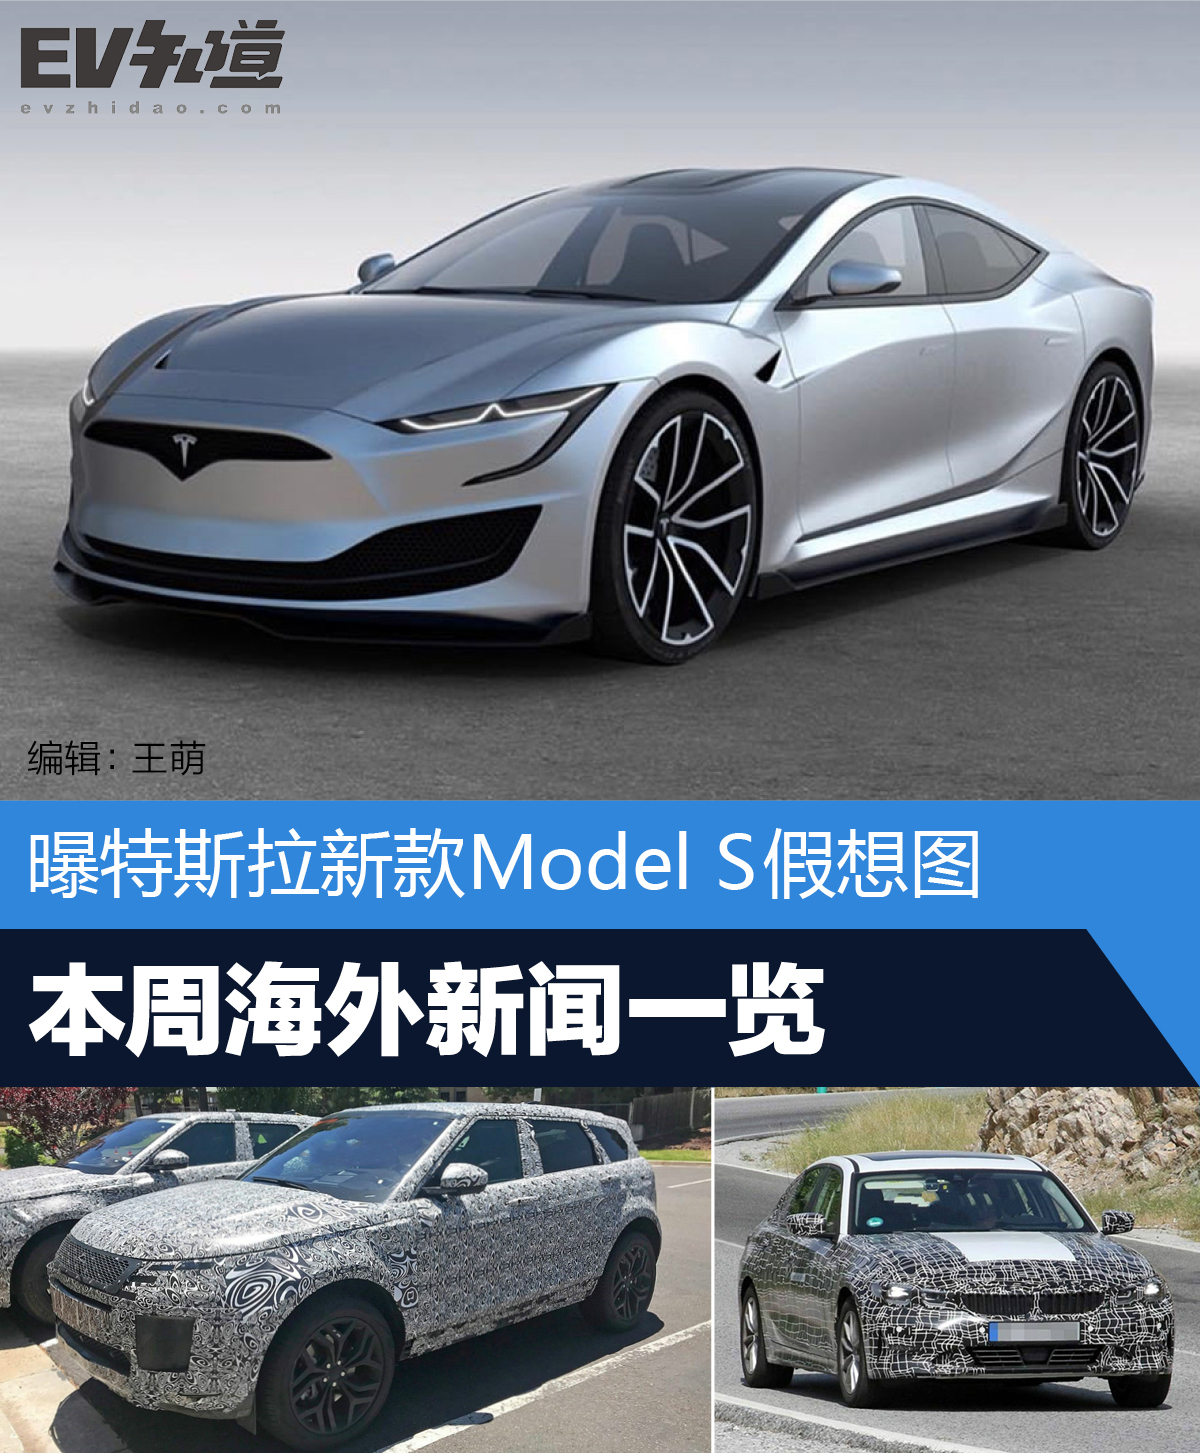 曝特斯拉新款Model S假想图  本周海外新闻一览